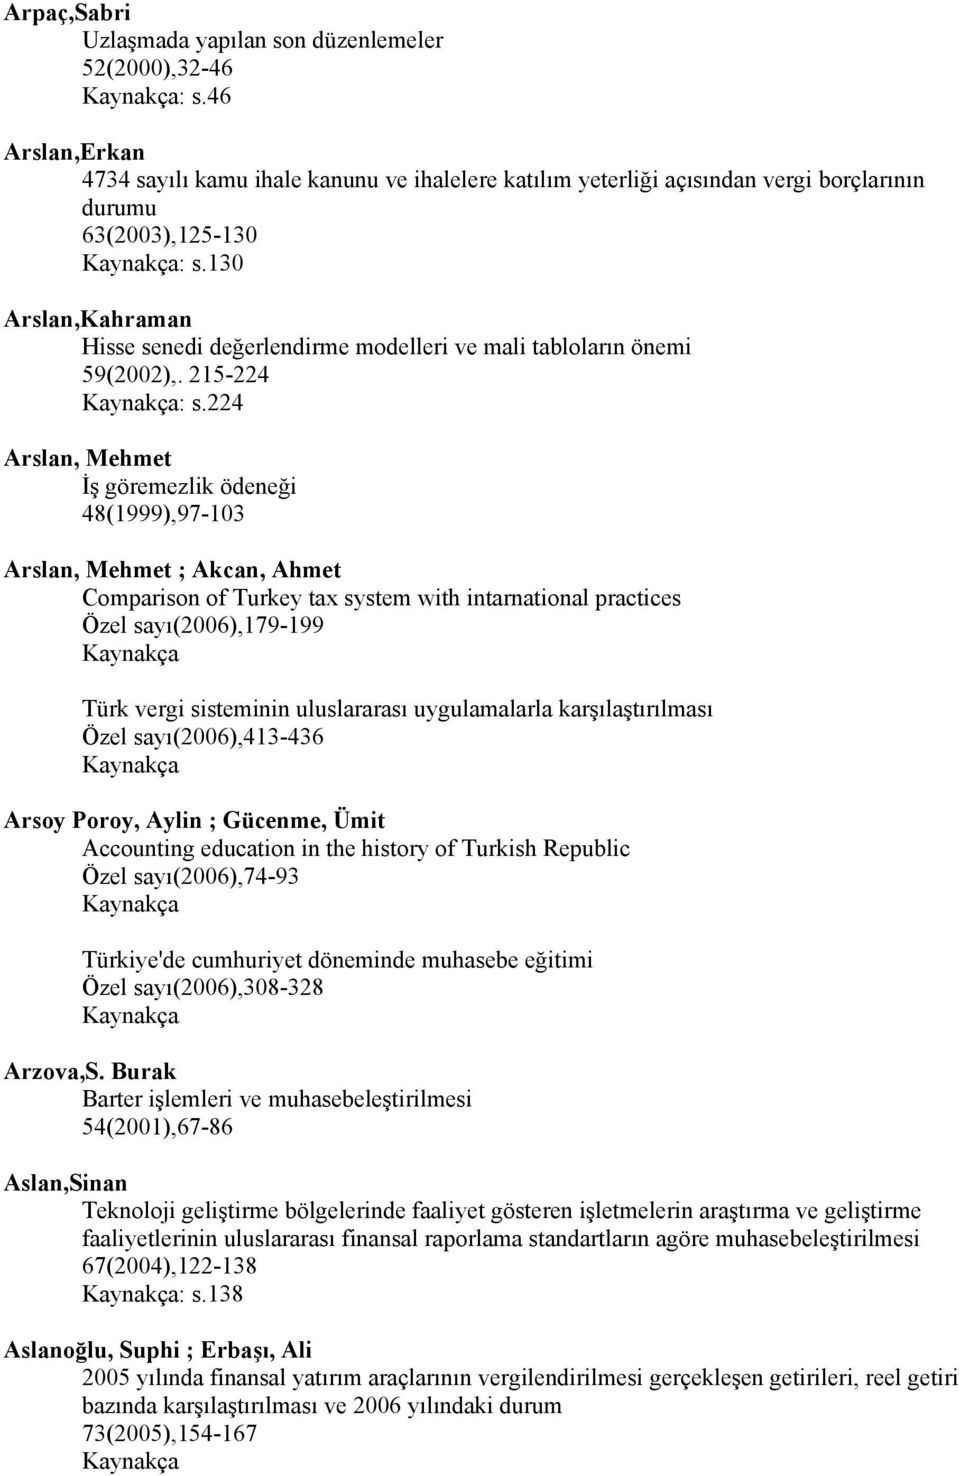 224 Arslan, Mehmet İş göremezlik ödeneği 48(1999),97-103 Arslan, Mehmet ; Akcan, Ahmet Comparison of Turkey tax system with intarnational practices Özel sayı(2006),179-199 Türk vergi sisteminin